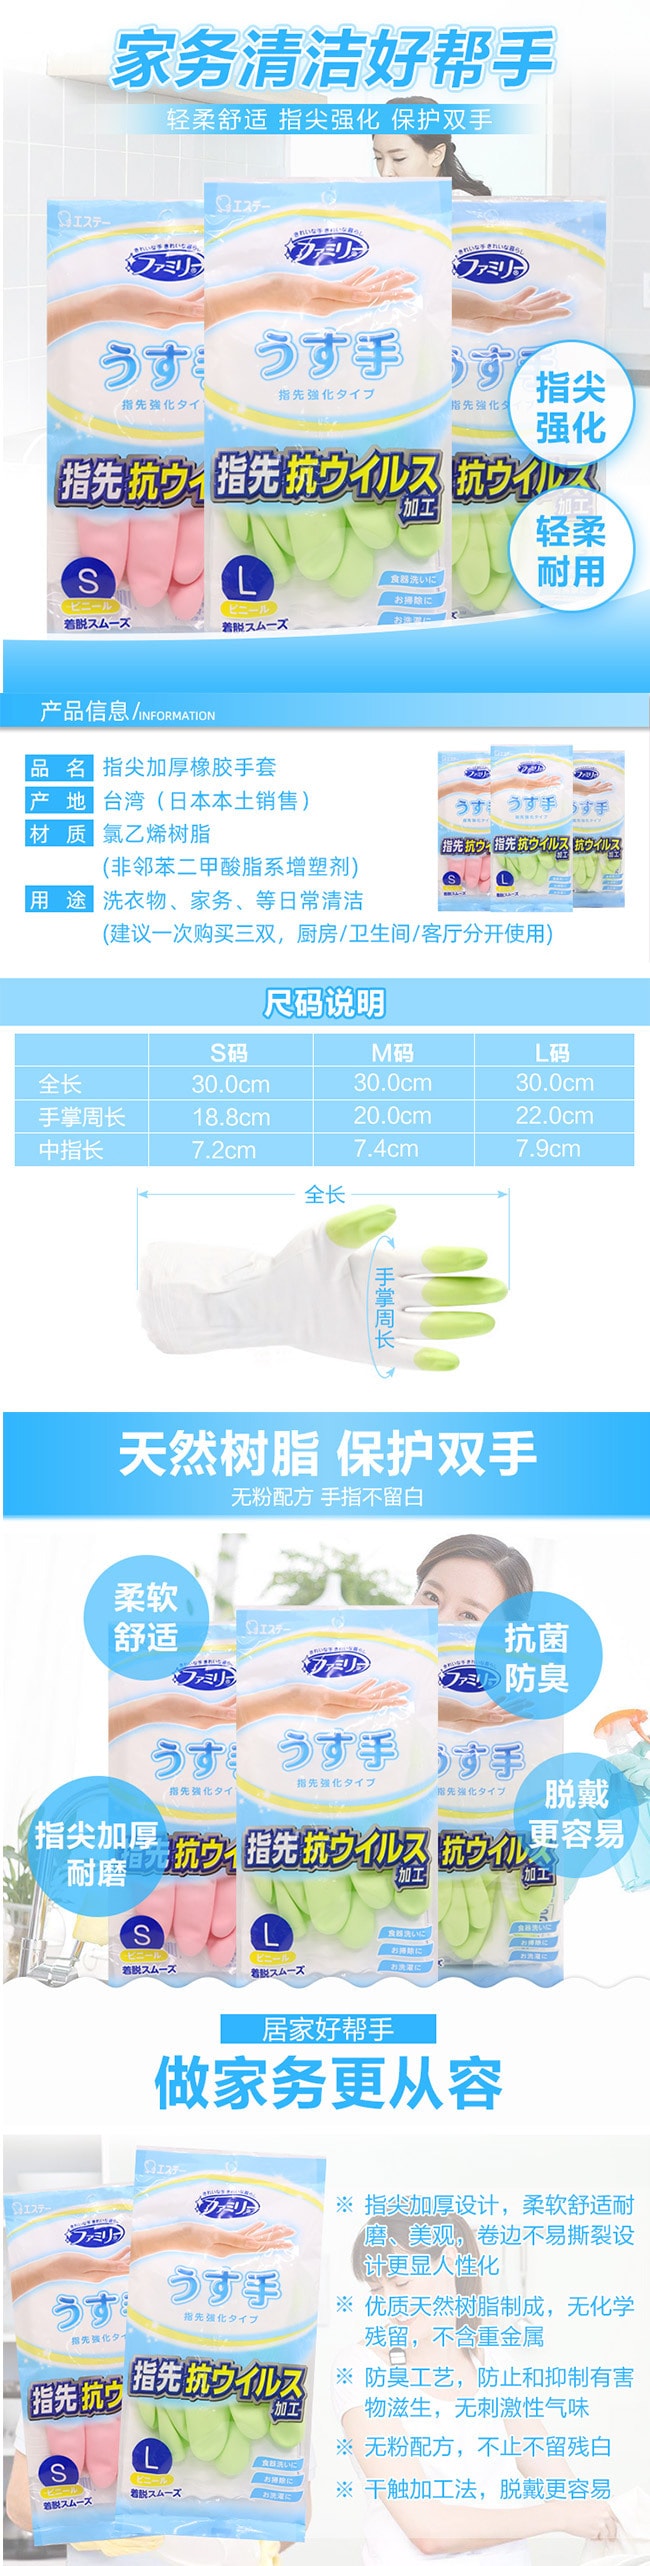 【日本直郵】ST艾飾庭 樹脂家庭薄款強化指尖手套 M碼 綠色